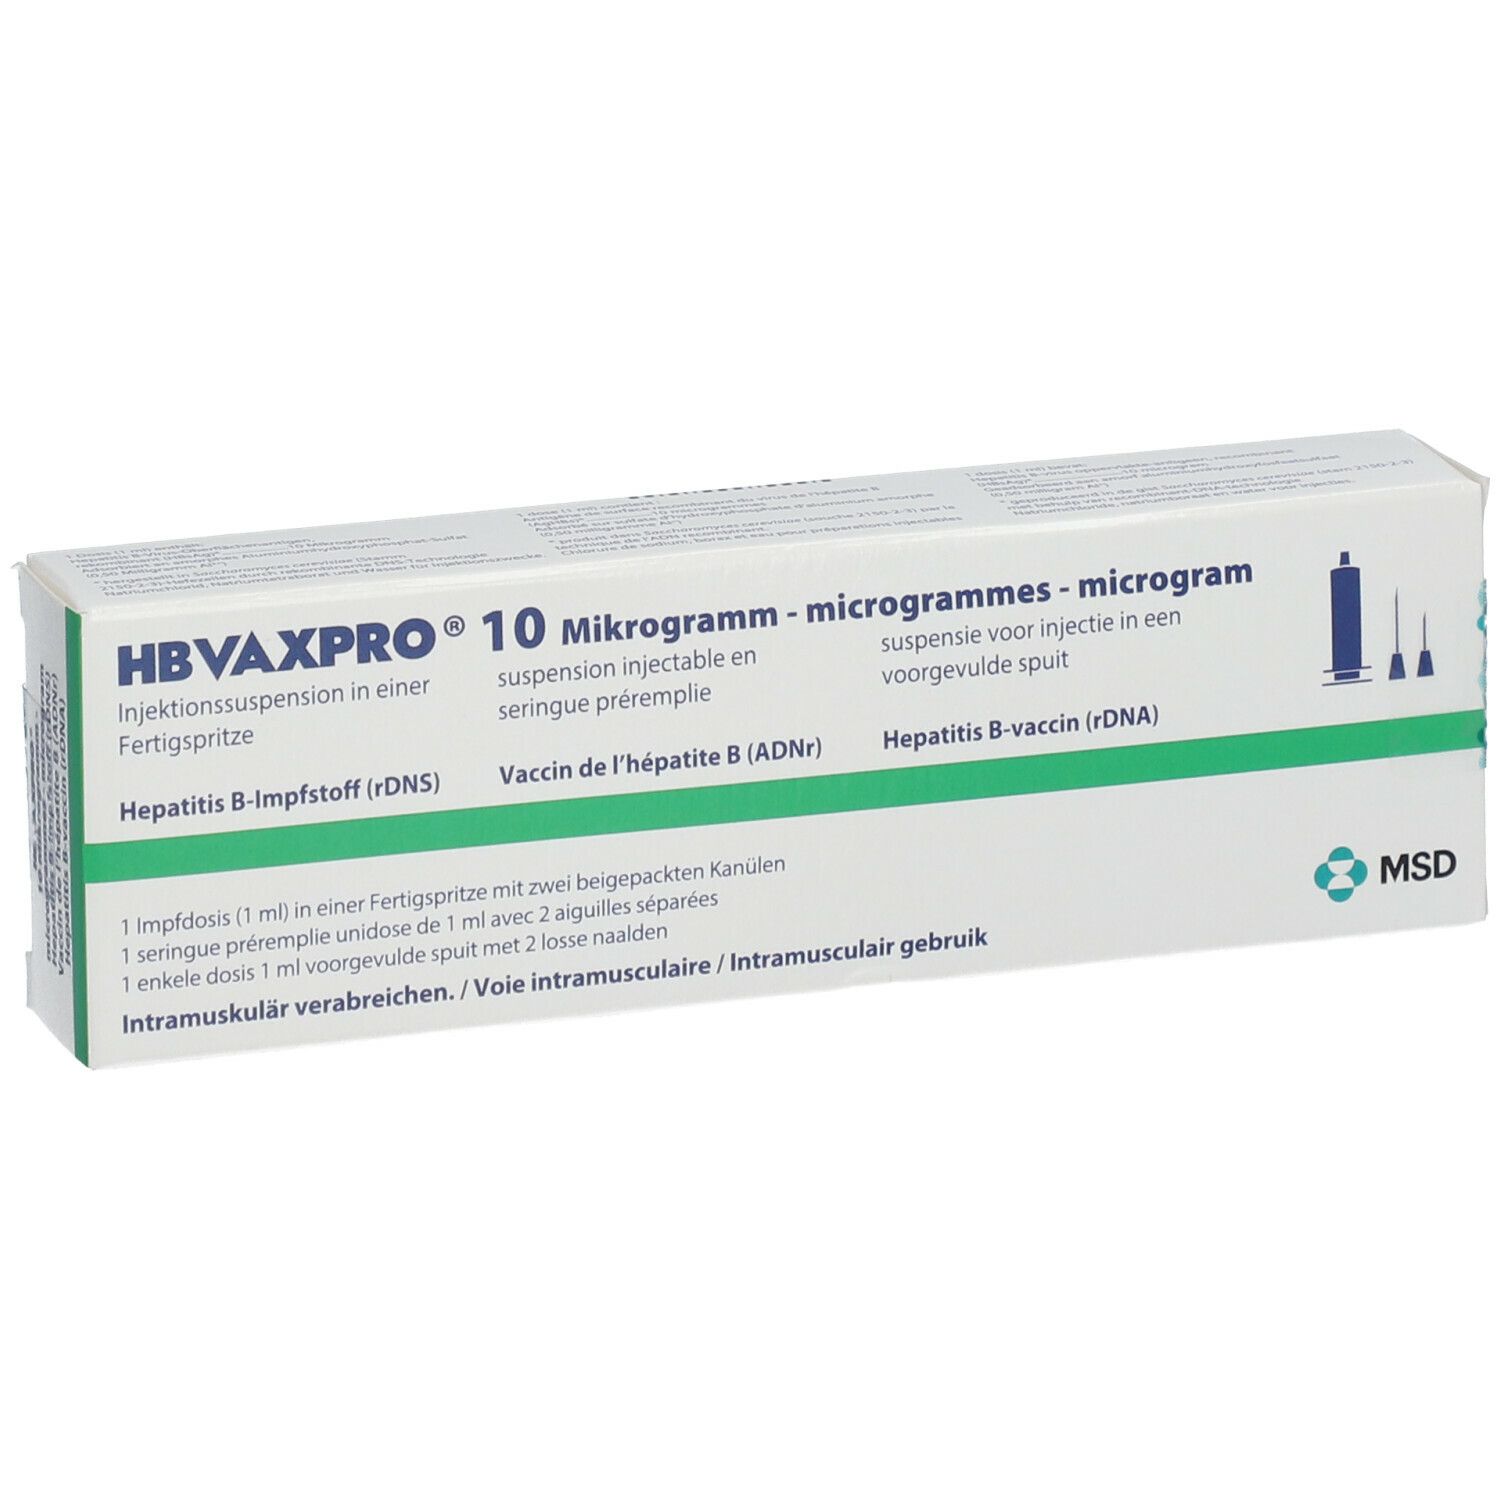 HBVAXPRO® 10 Mikrogramm